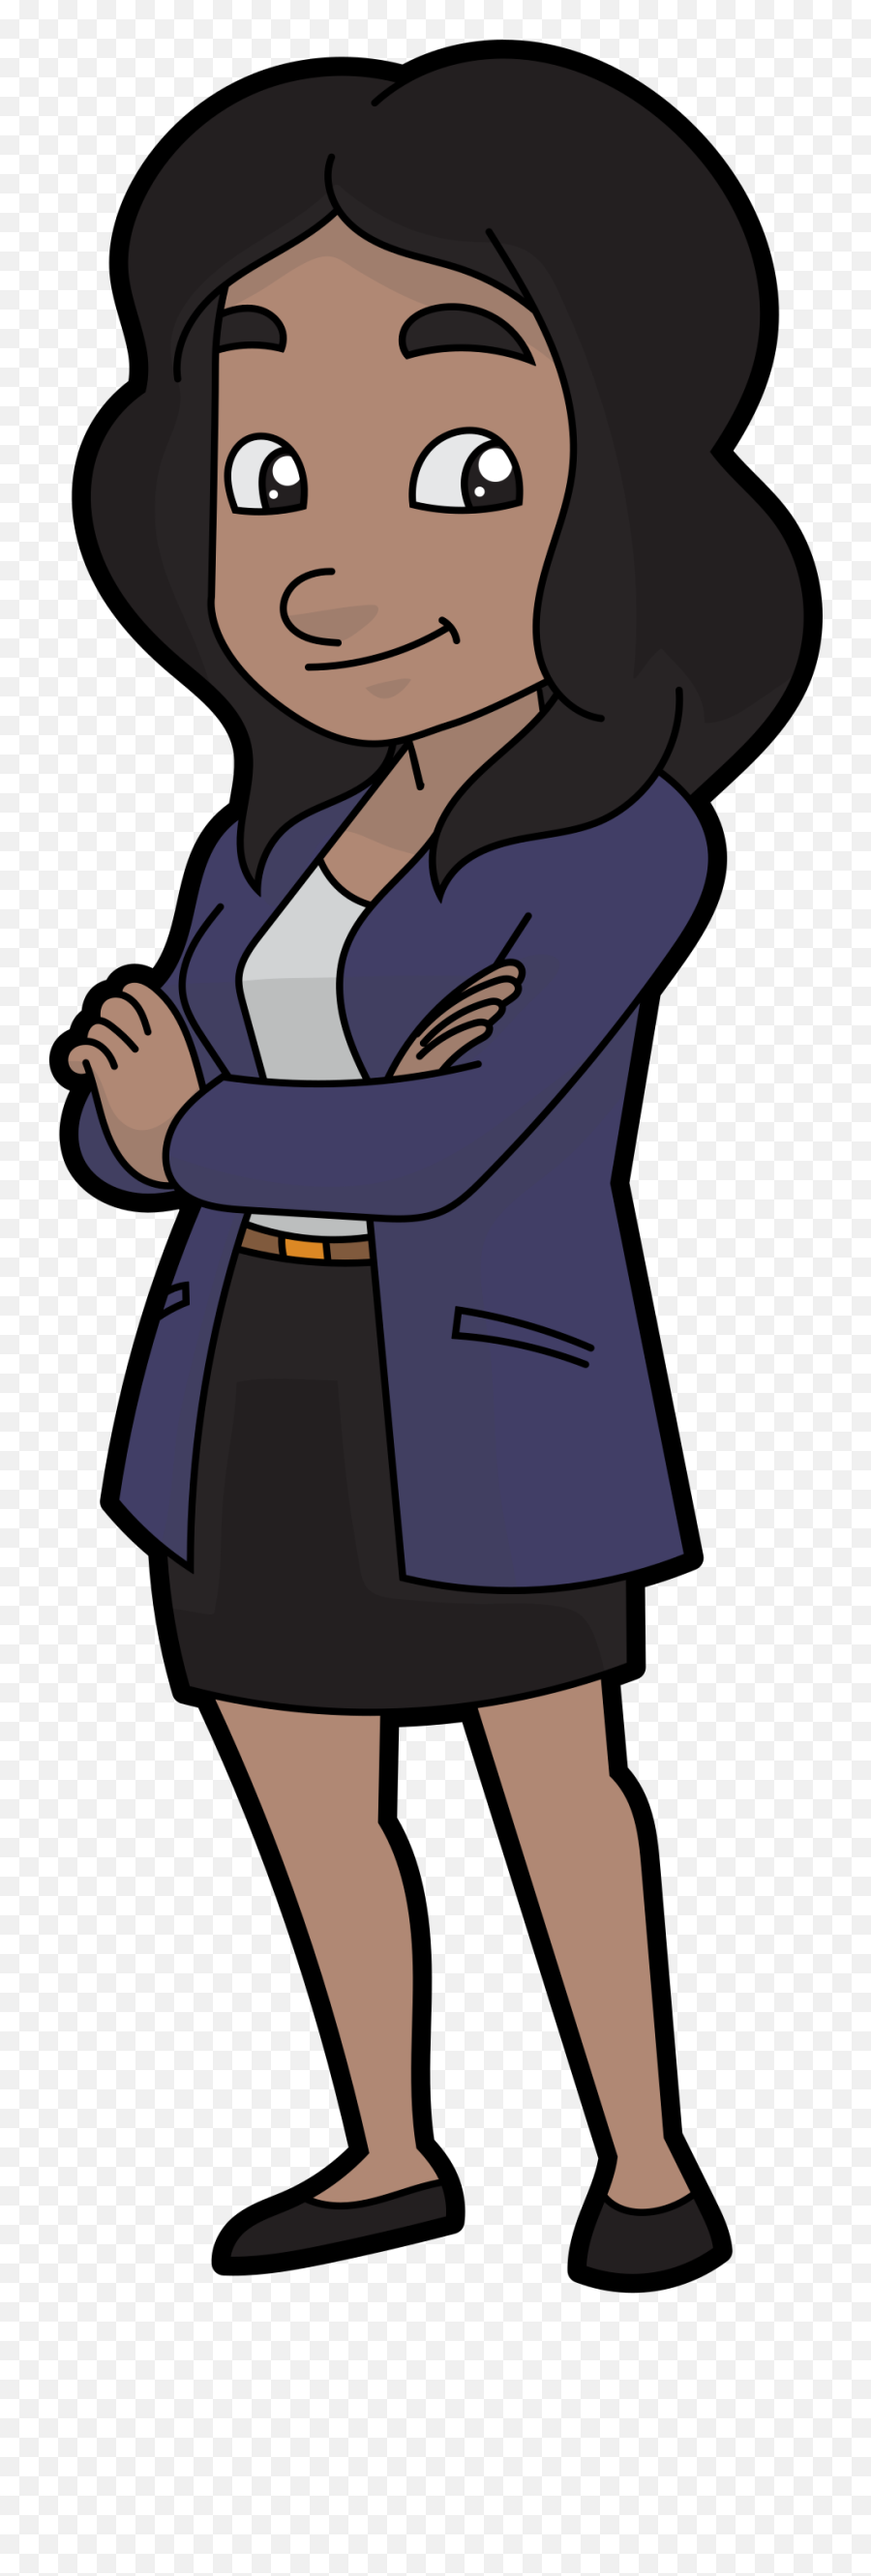 A Chic Cartoon Businesswoman - Business Woman Standing Cartoon Employee Png,Cartoon Woman Png